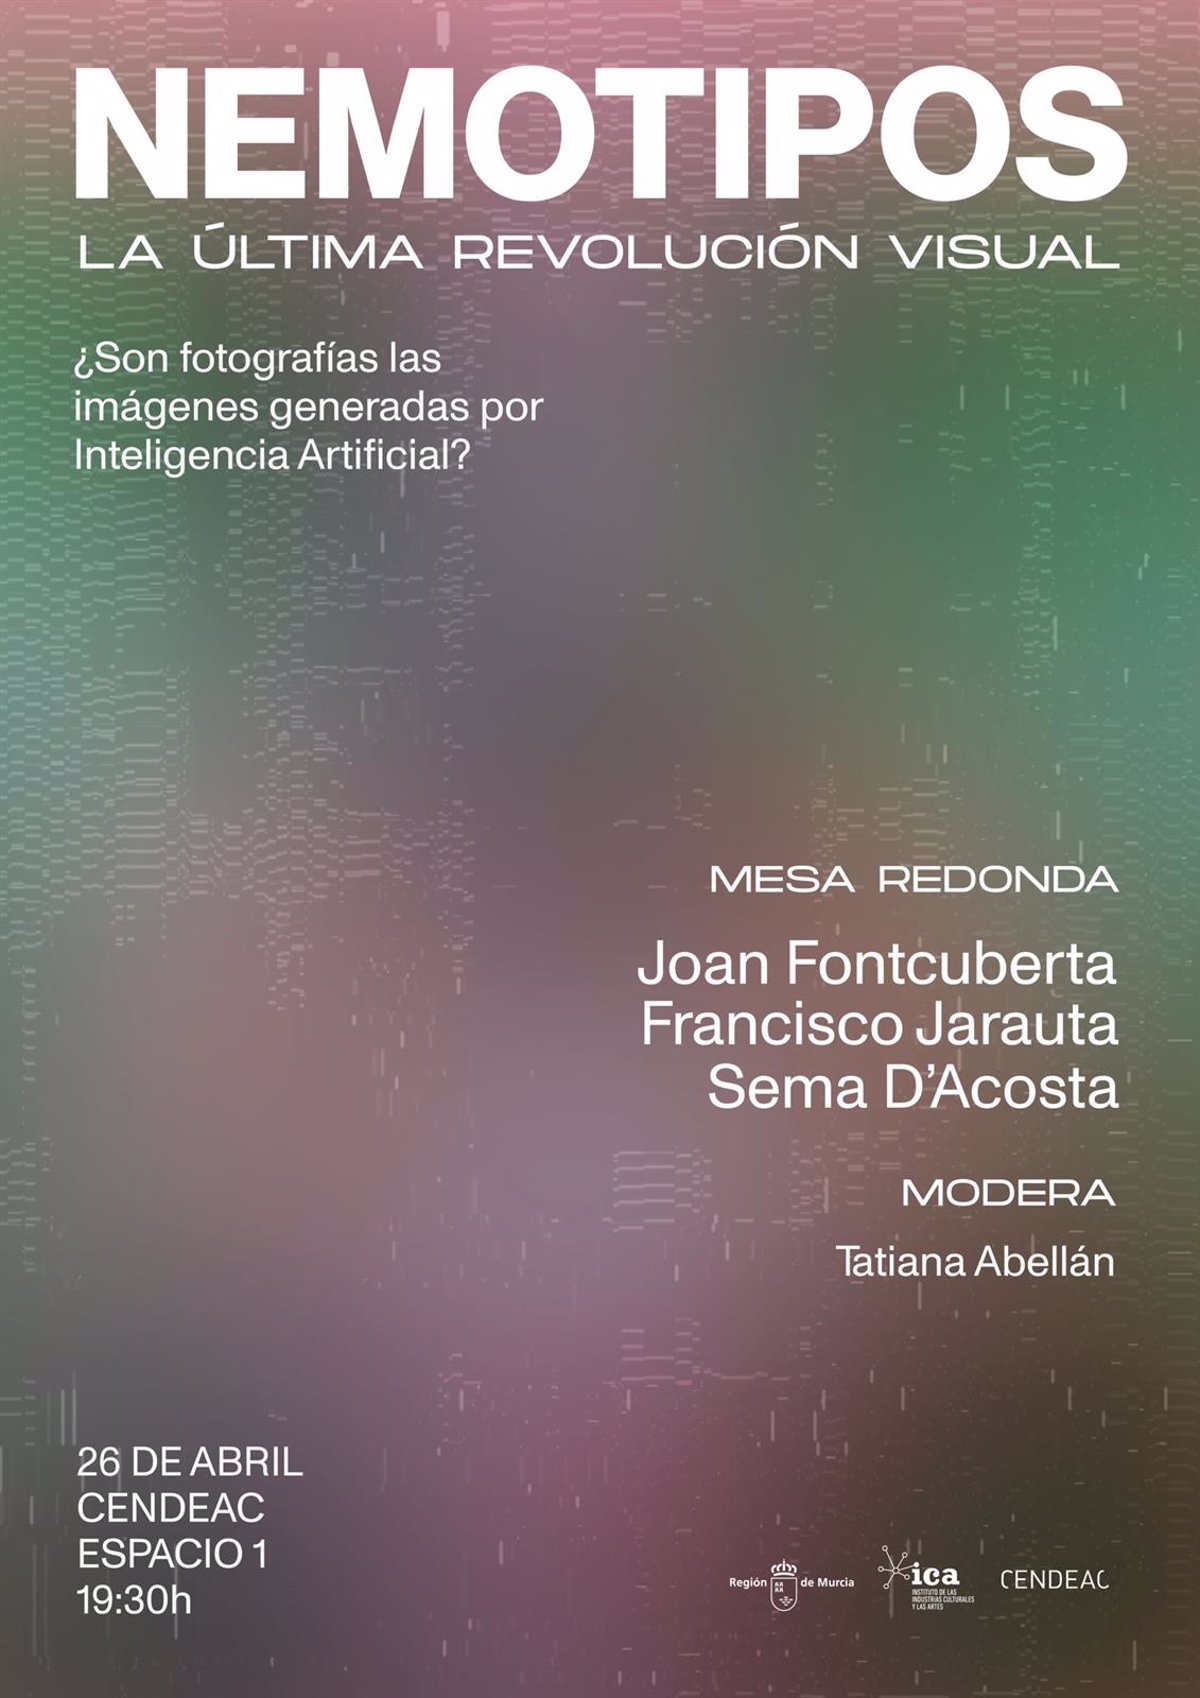 Una mesa redonda aborda las imágenes generadas con IA con el artista Joan Fontcuberta y el filósofo Francisco Jarauta